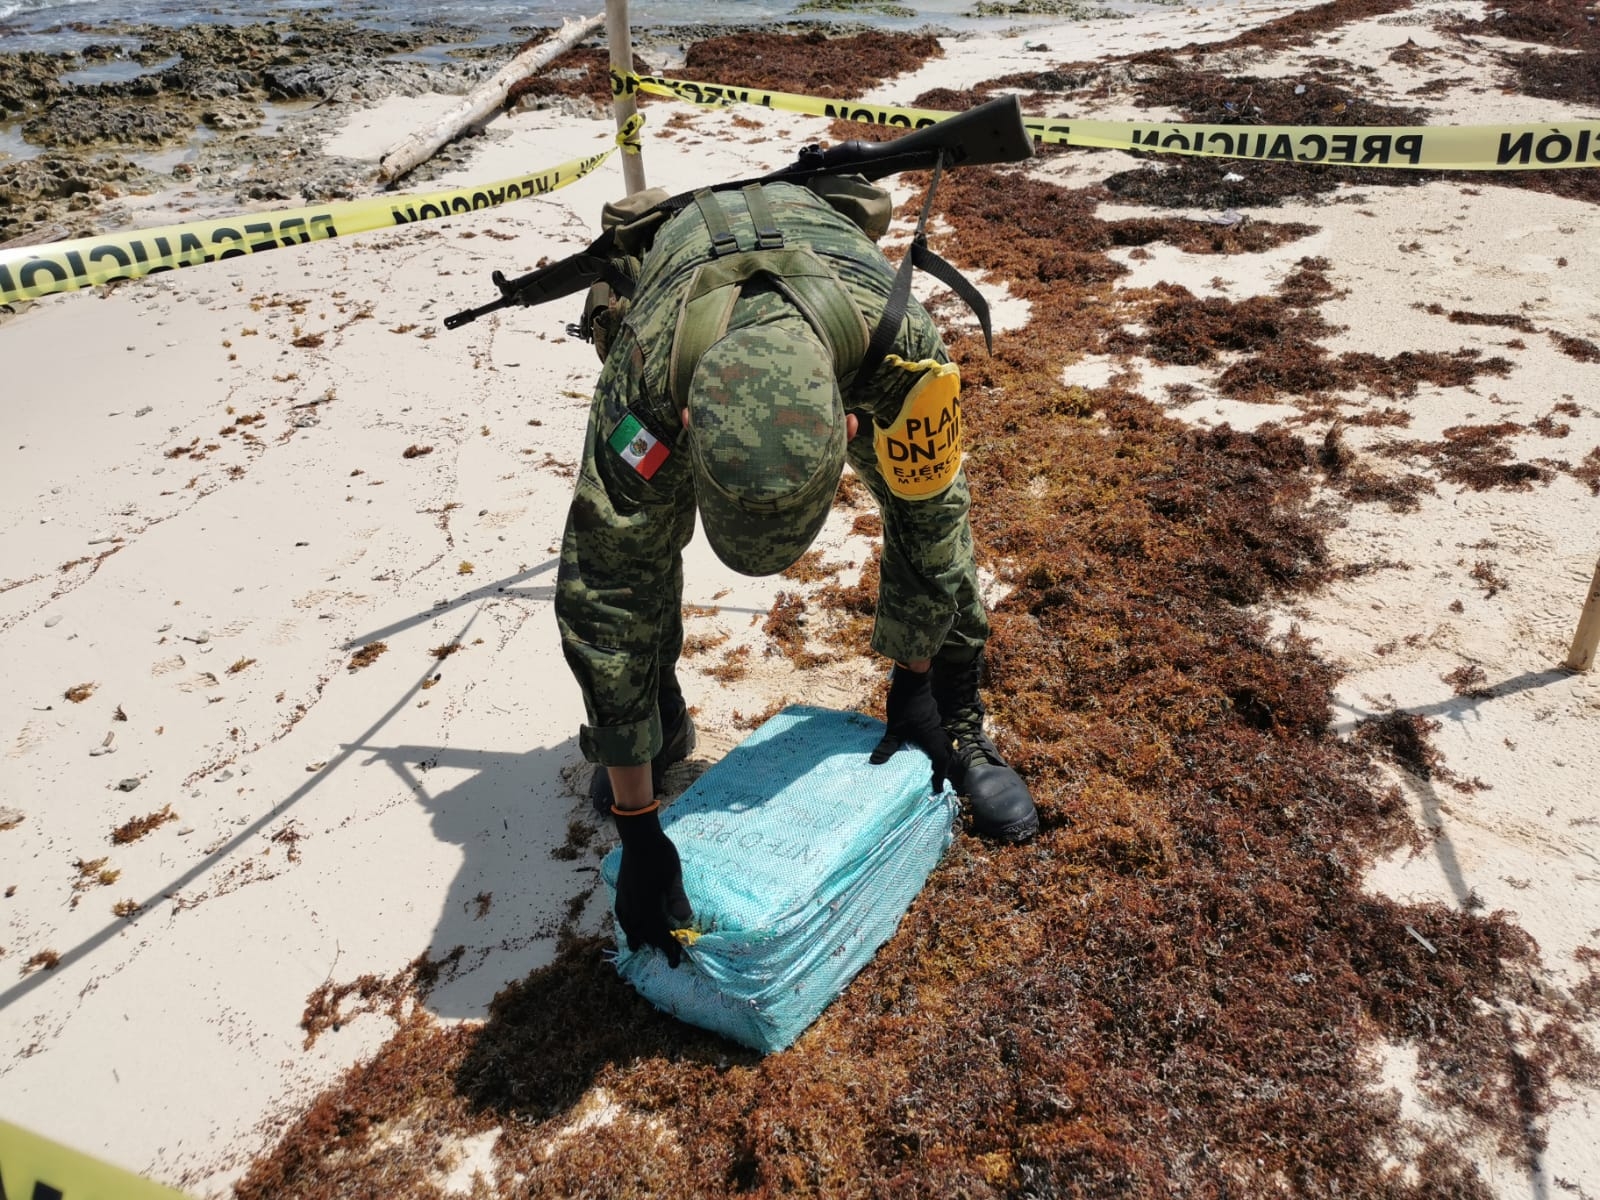 Recalan paquetes con más de 80 kilos de droga en Cozumel